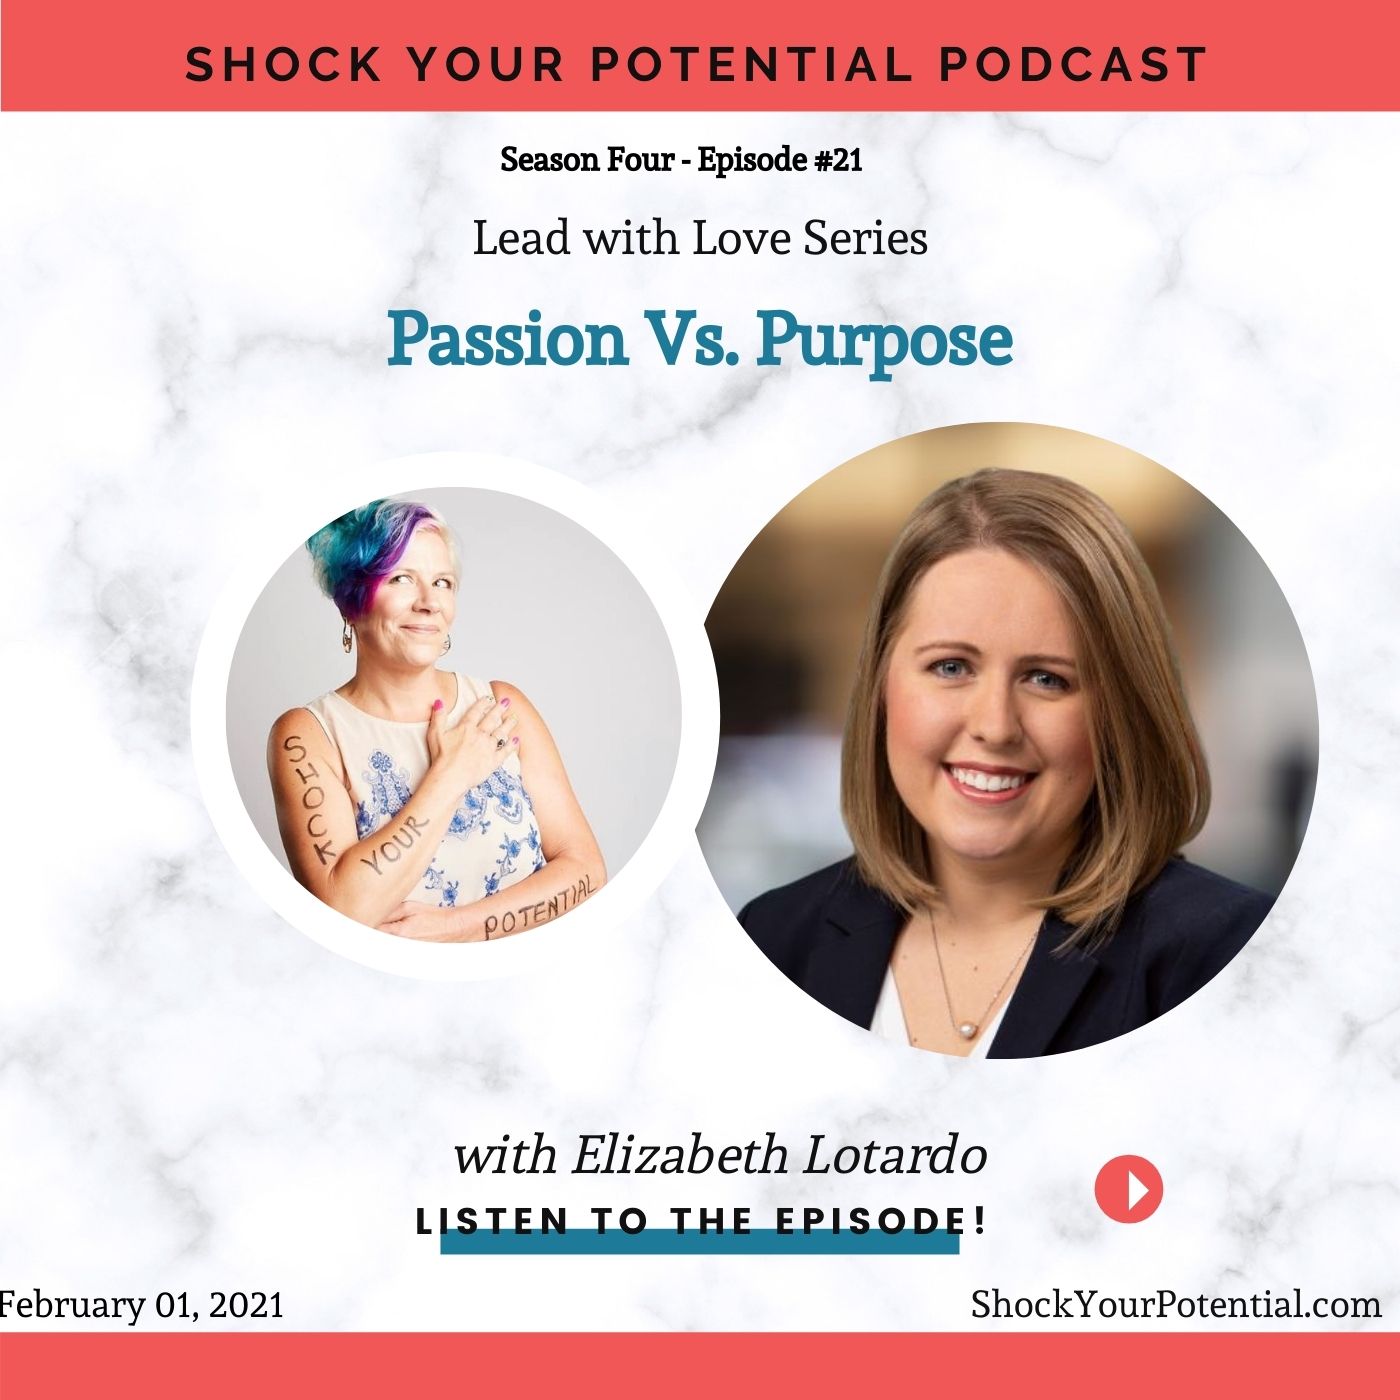 Passion Vs. Purpose – Elizabeth Lotardo